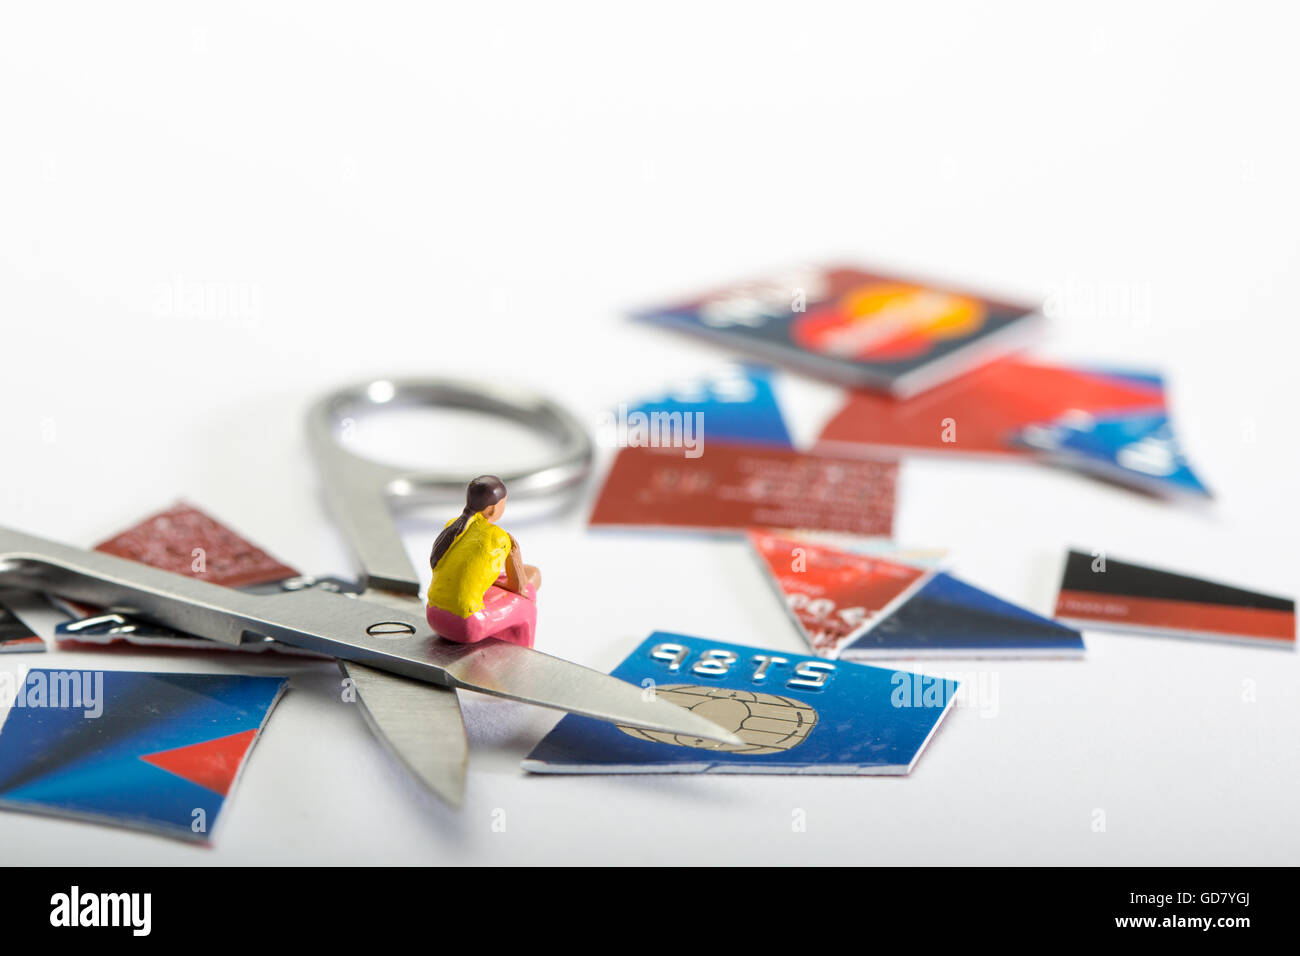 Tarjeta de crédito concepto depart. de la imagen de una figura femenina se sentó con un corte de tarjeta de crédito y un par de tijeras Foto de stock